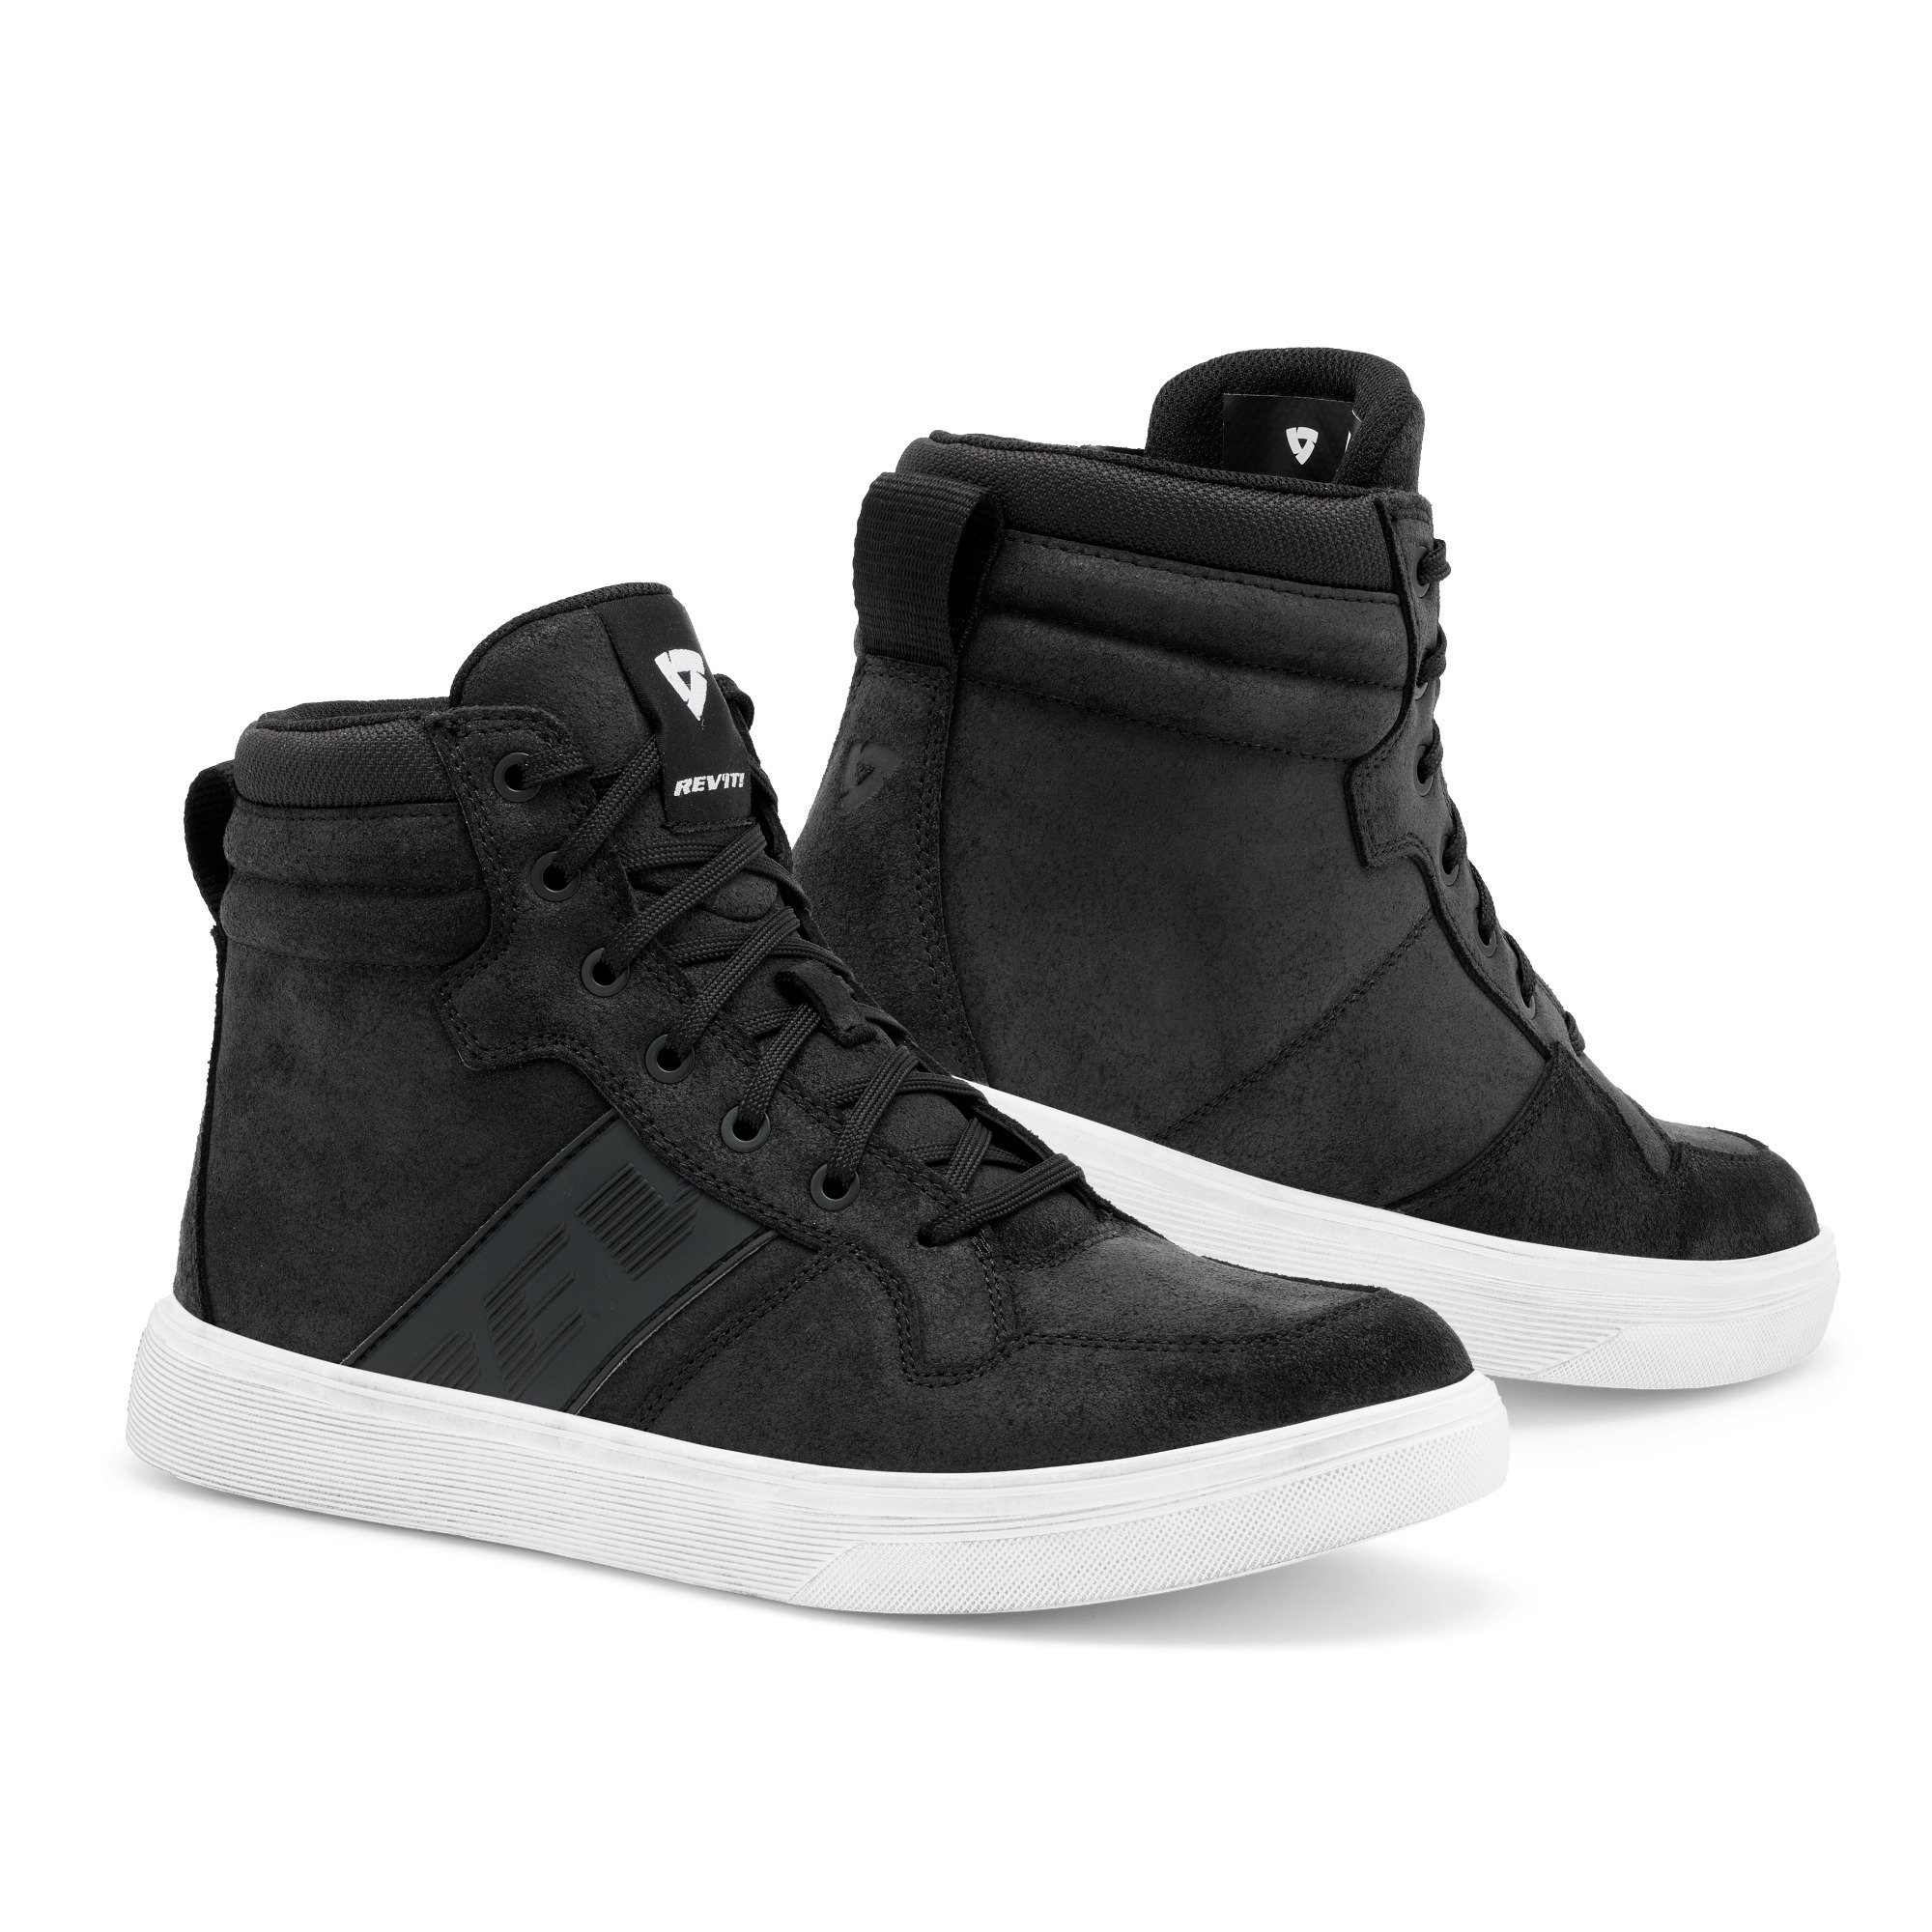 Image of REV'IT! Kick Shoes Black White Size 40 EN